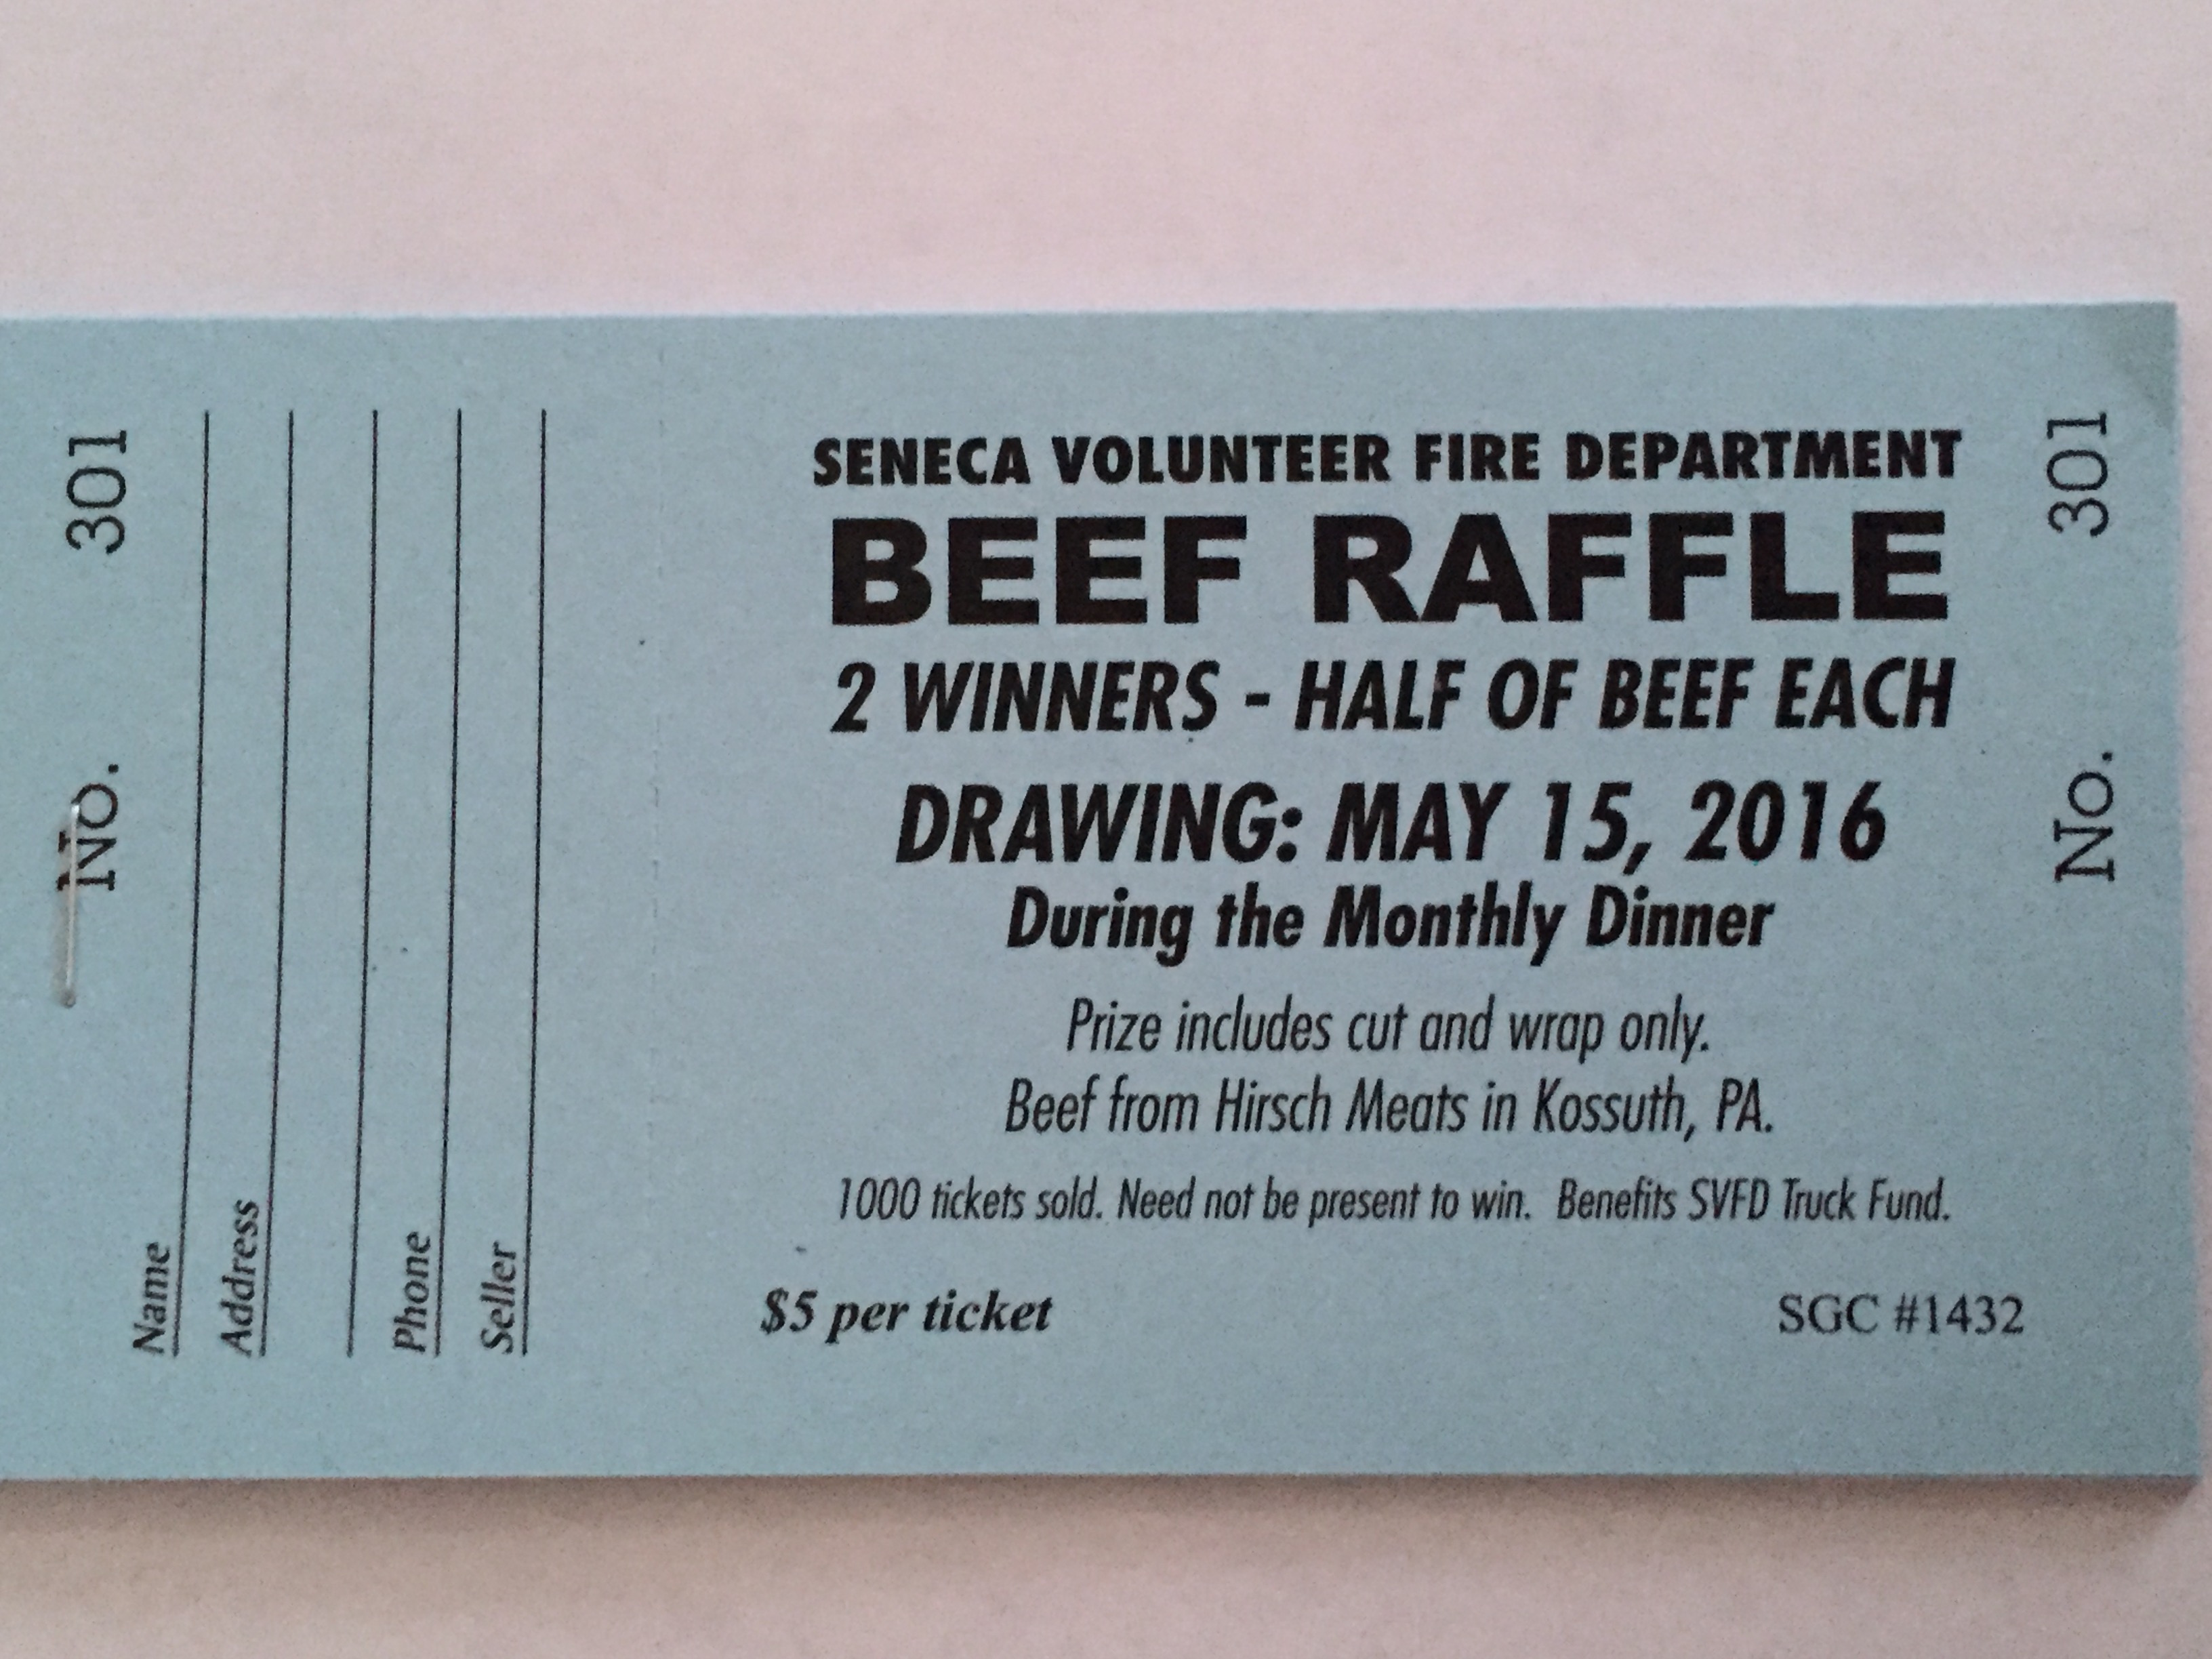 2016-beef-raffle-tickets-are-now-on-sale-seneca-volunteer-fire-dept